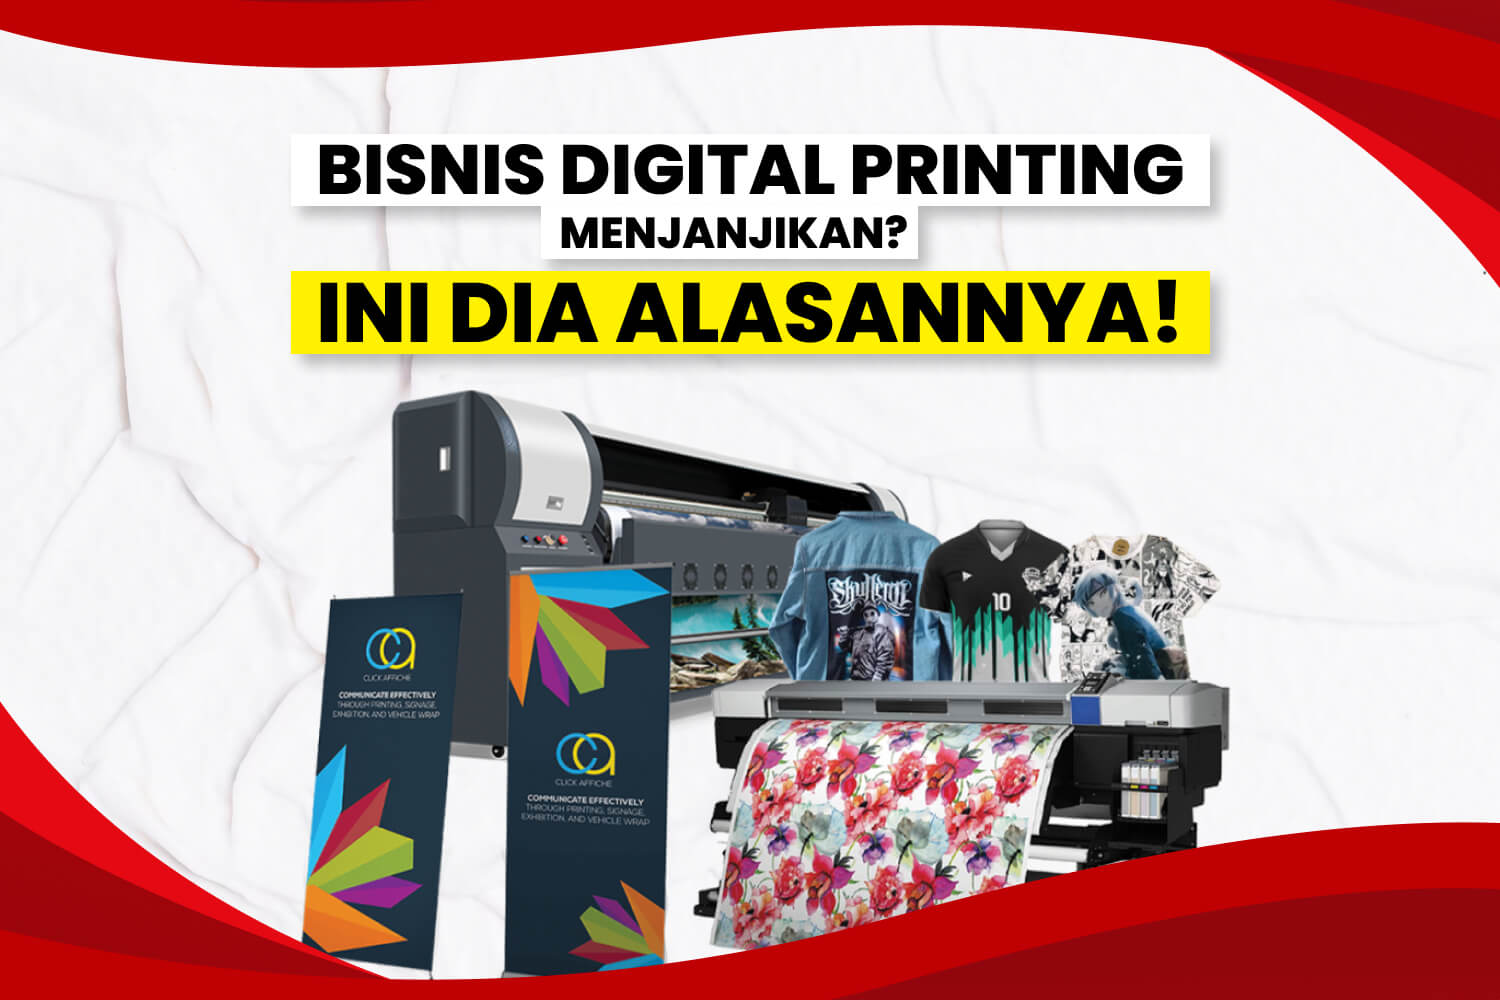 Bisnis Digital Printing Menjanjikan?